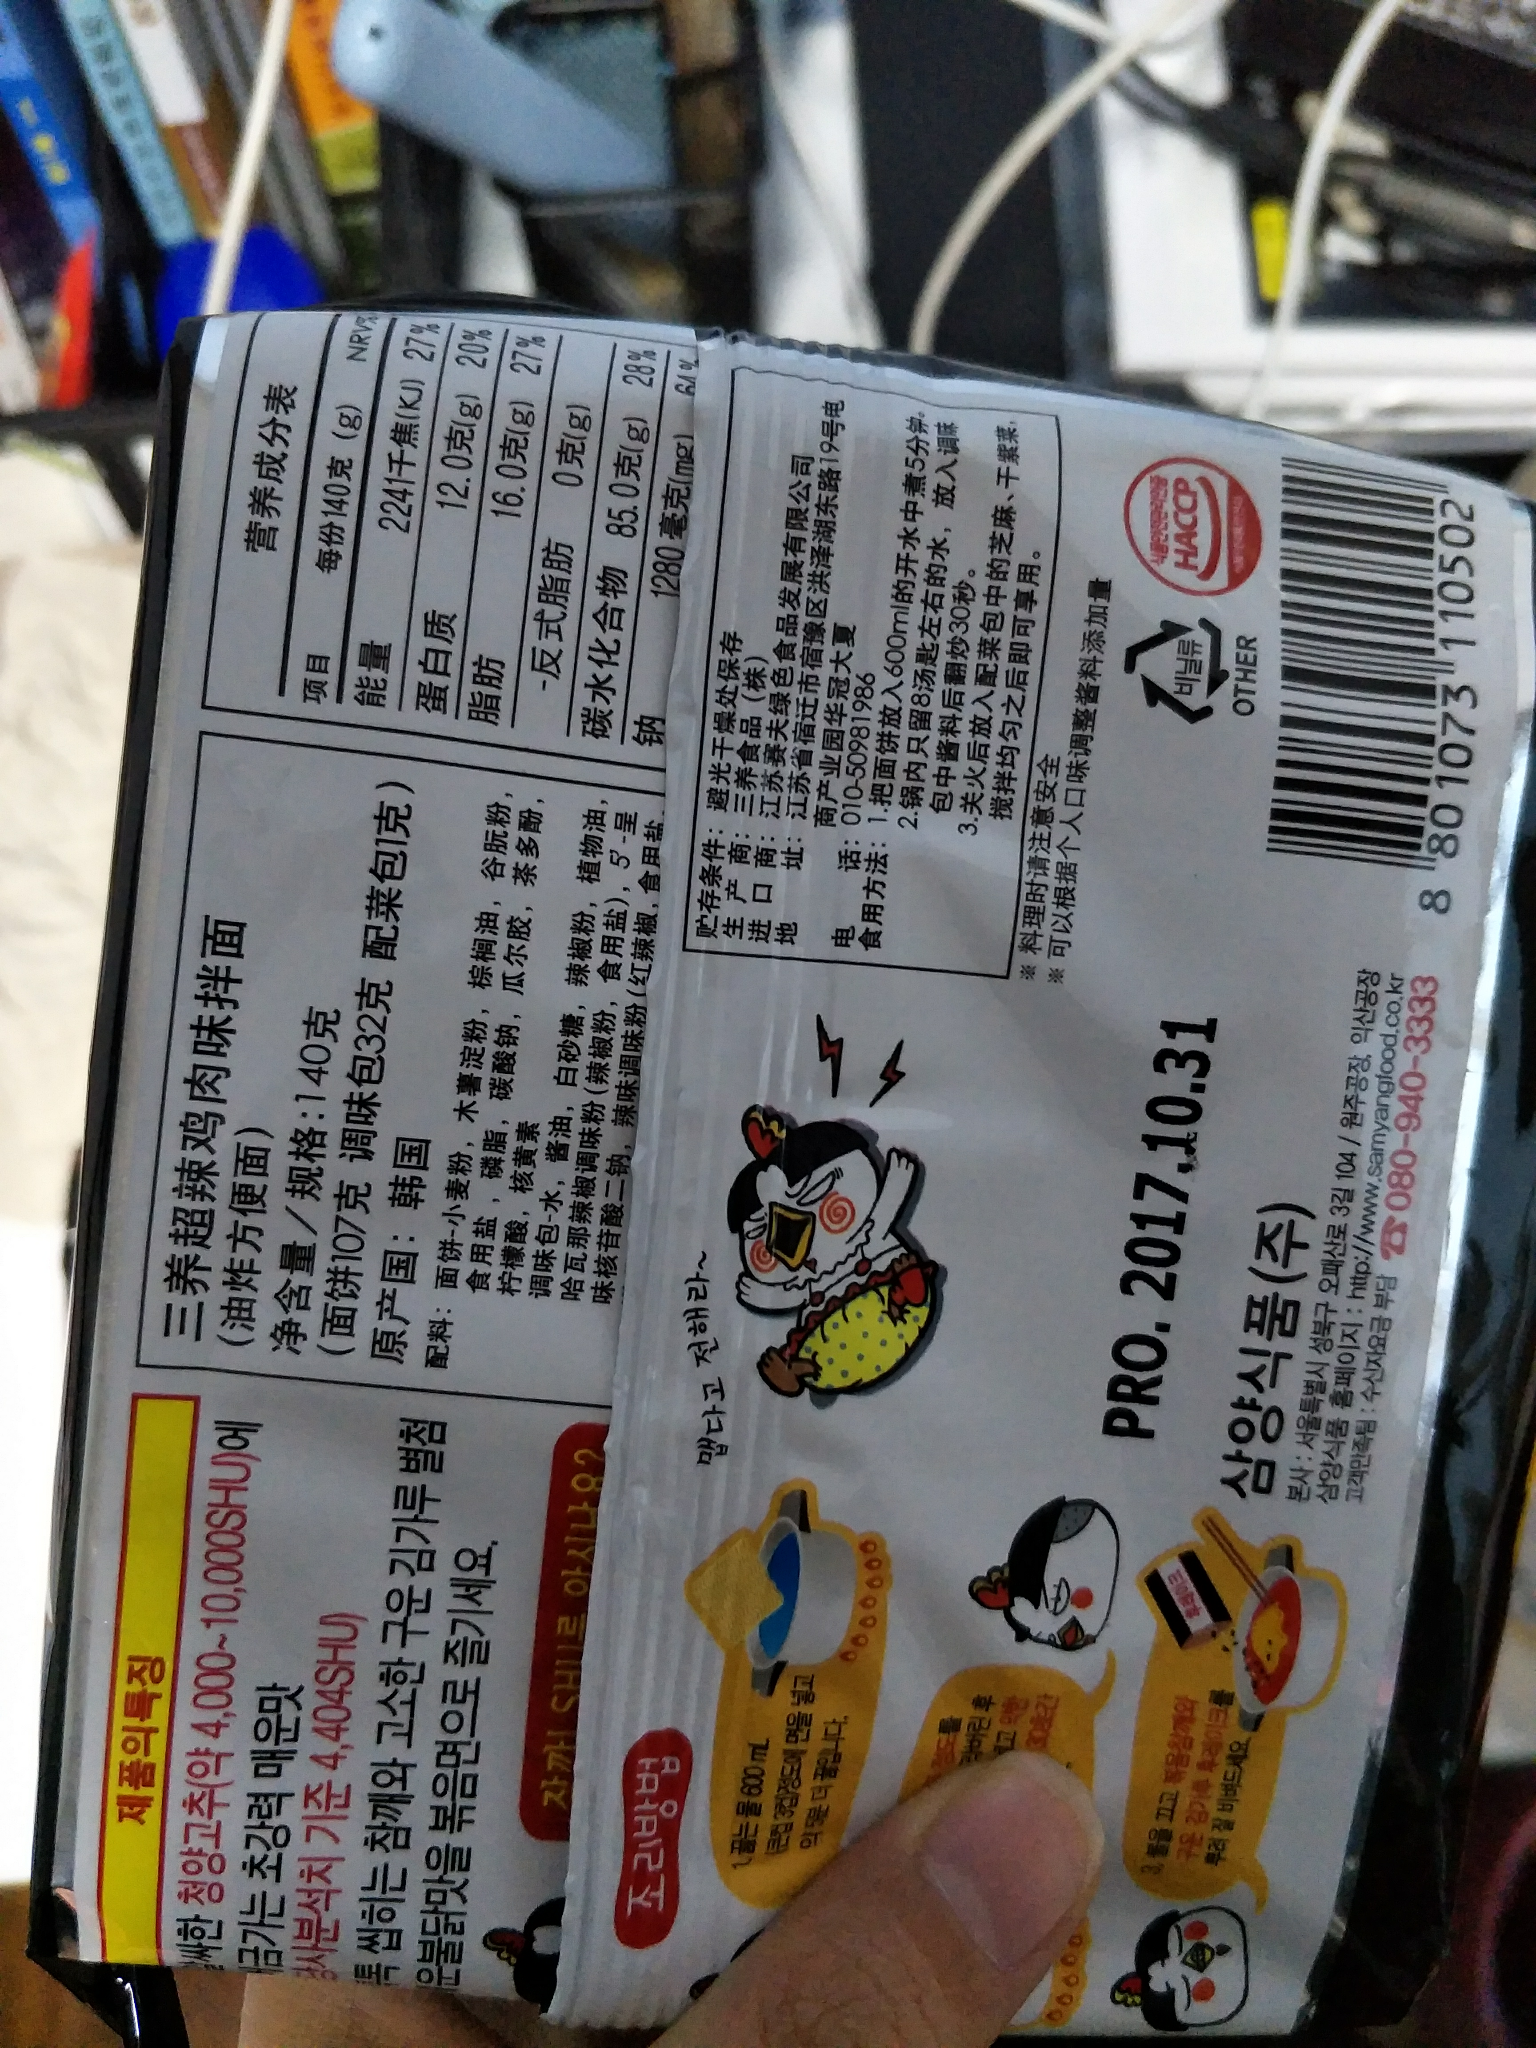 韩国三养火鸡面中文包装是假的吗?